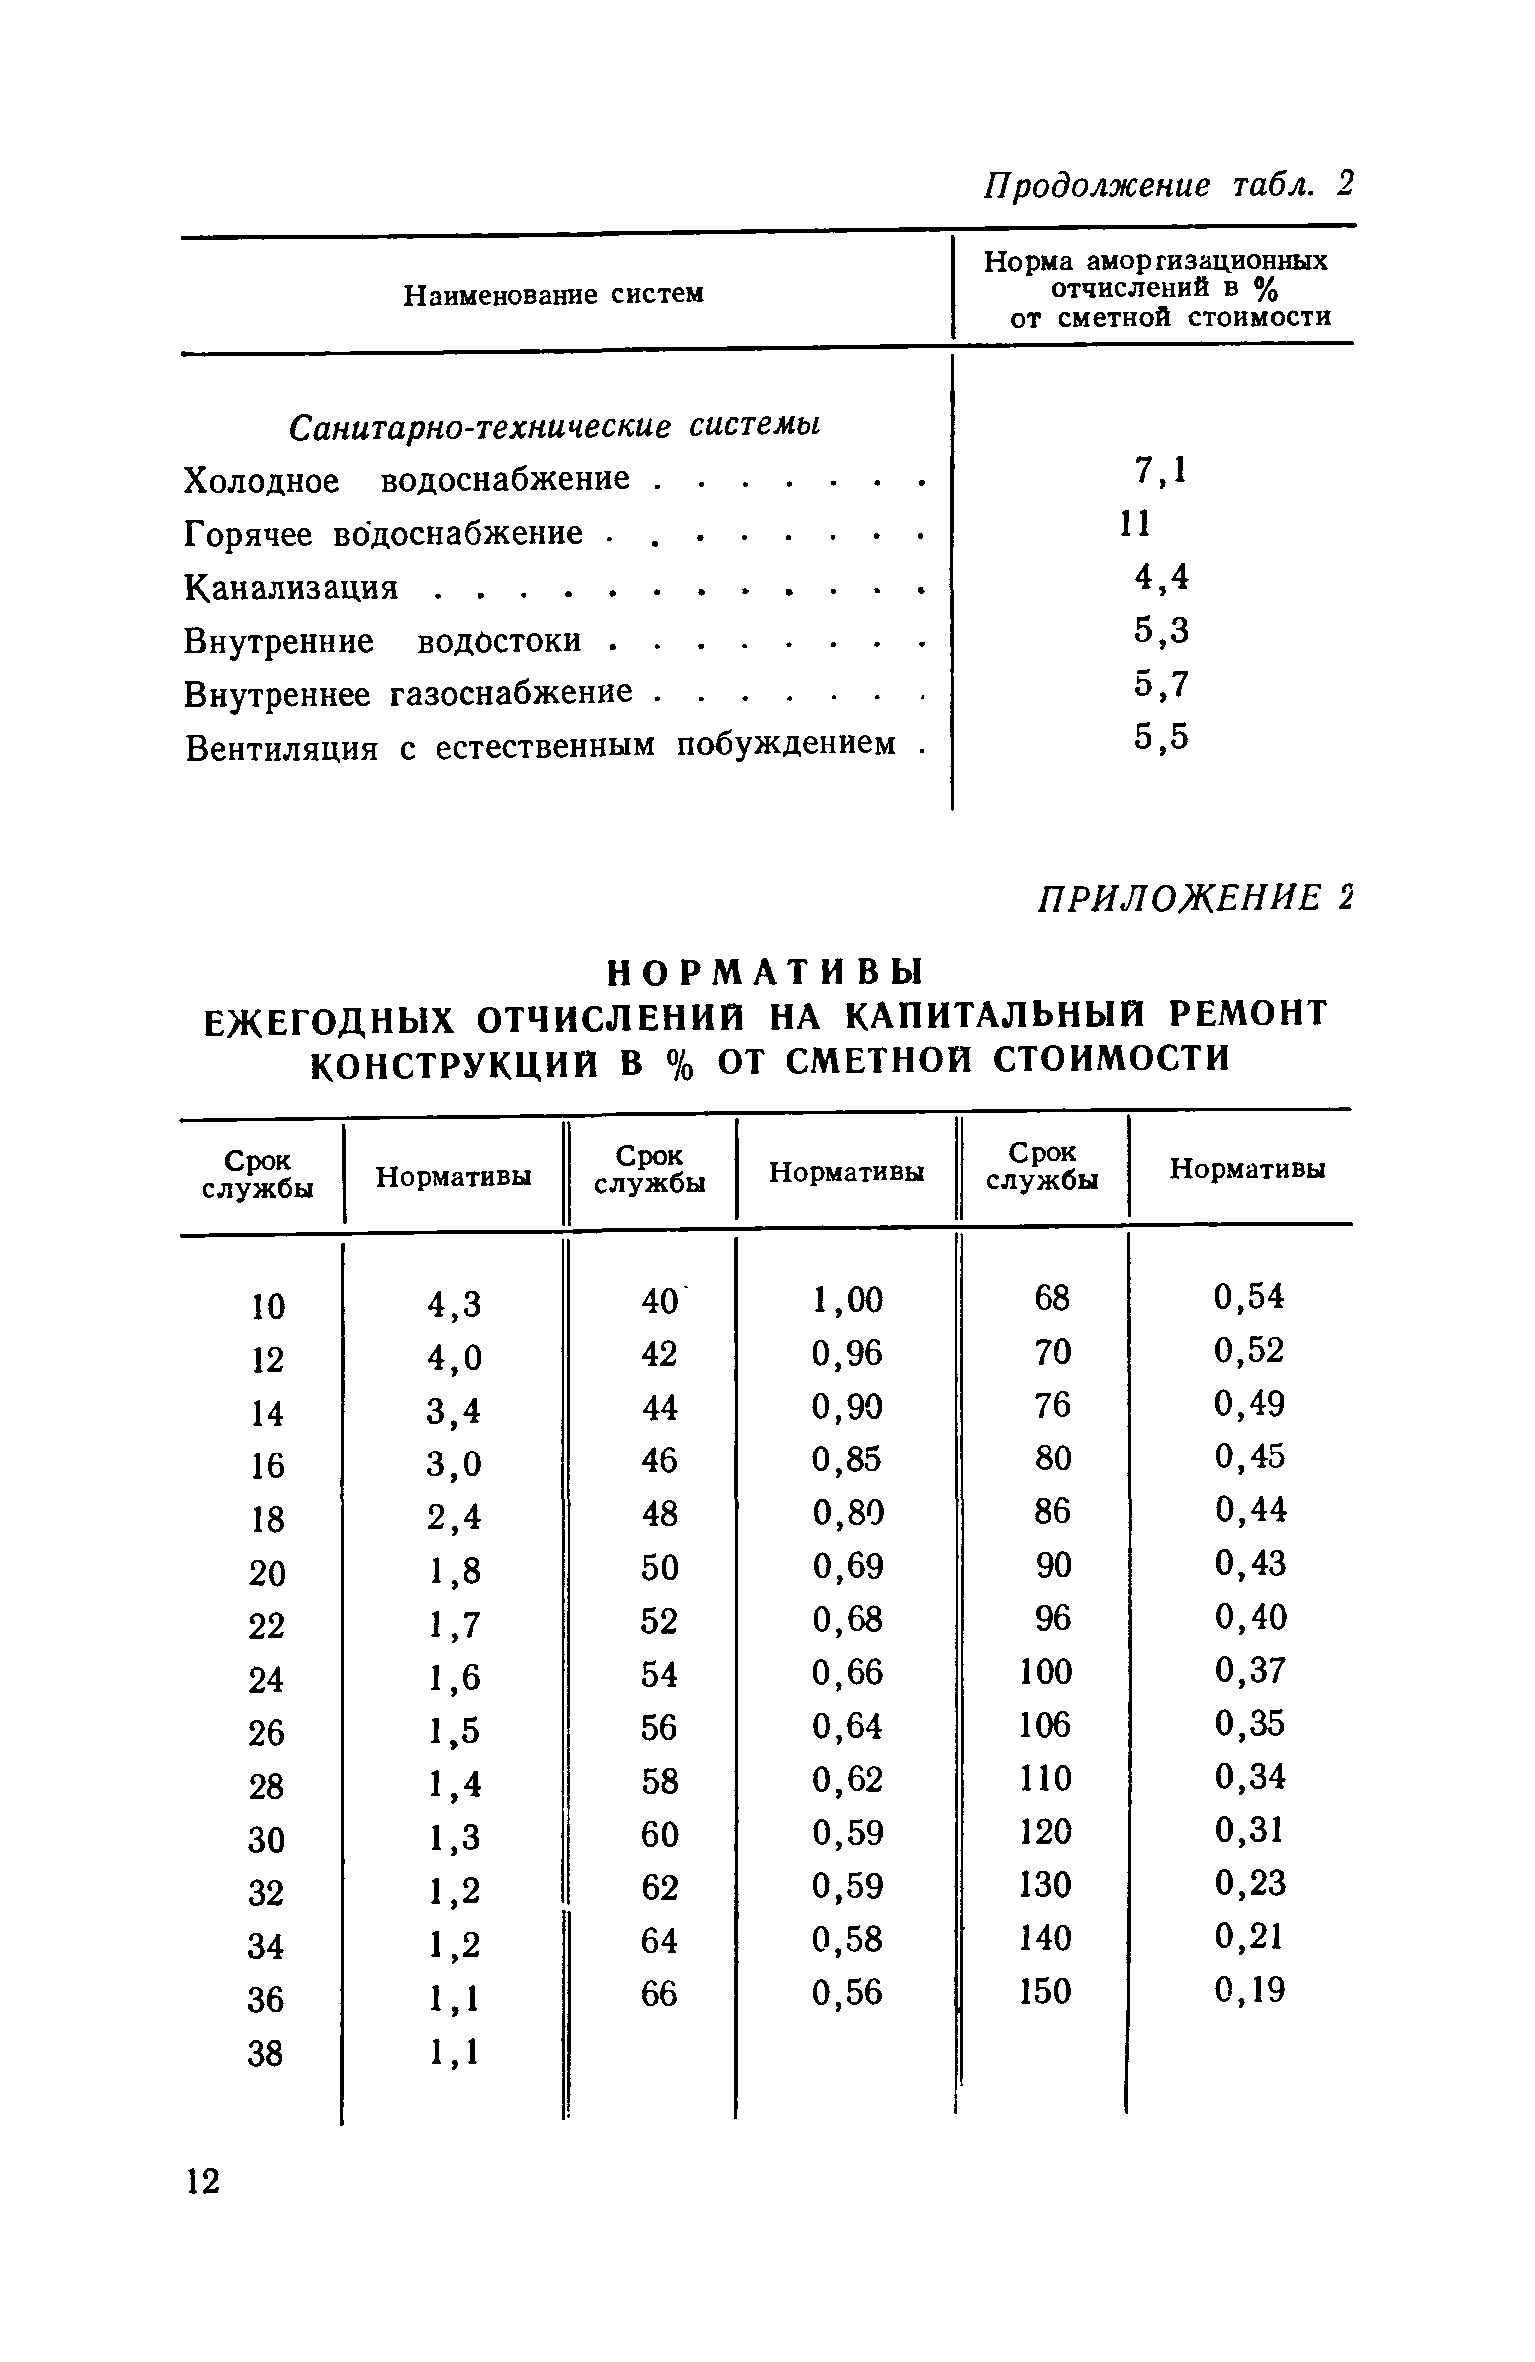 ВСН 11-73/Госгражданстрой